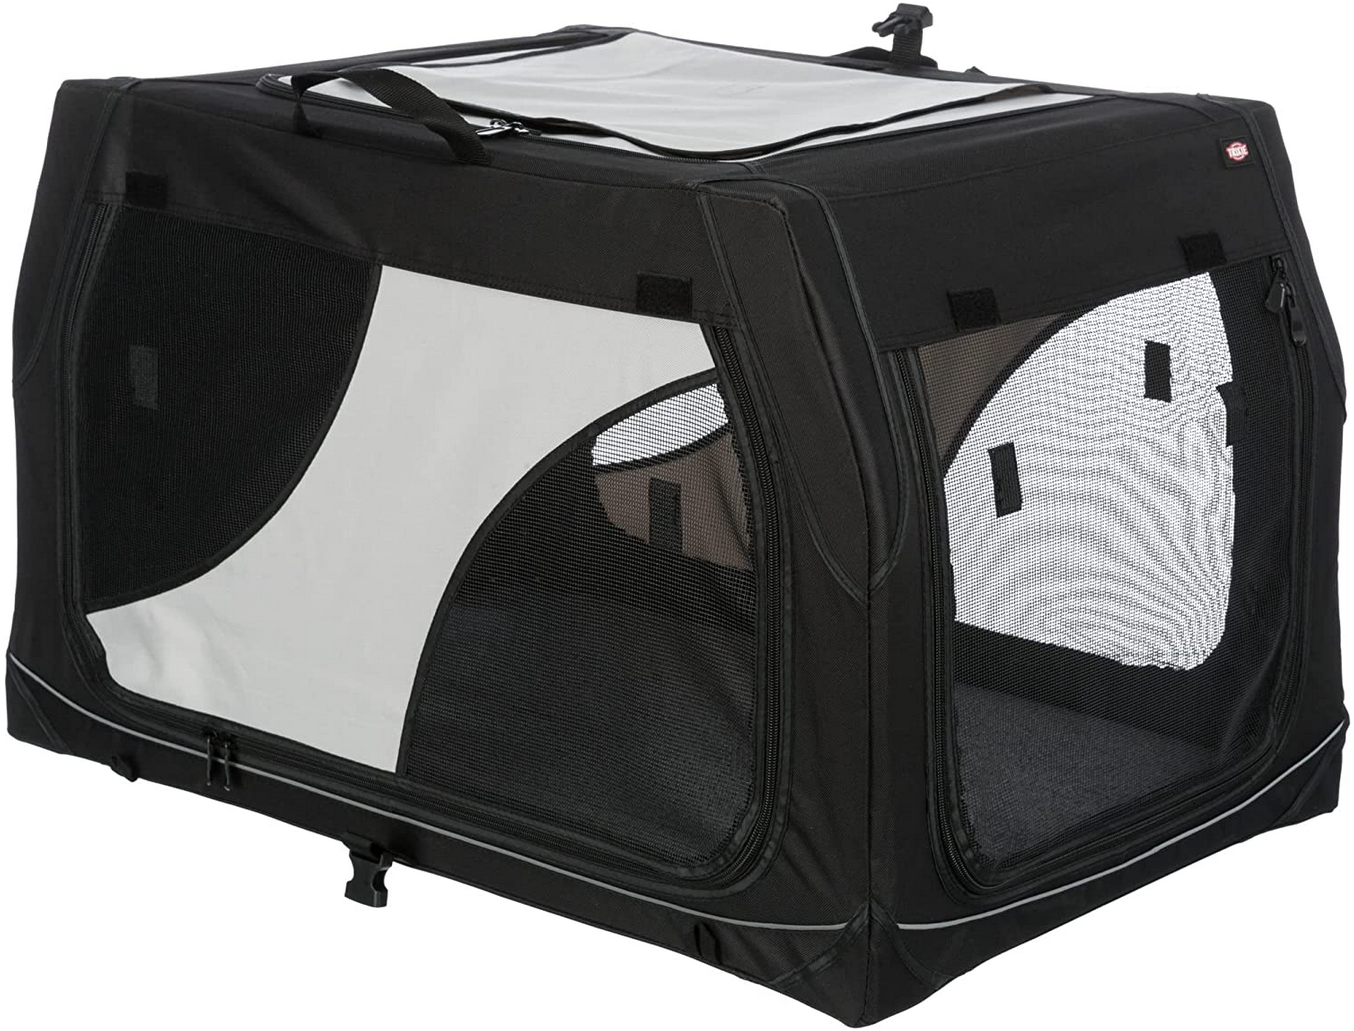 Trixie Mobile Kennel Vario 30 Transportbox, 76×48×51 cm für 55,30€ (statt 70€)